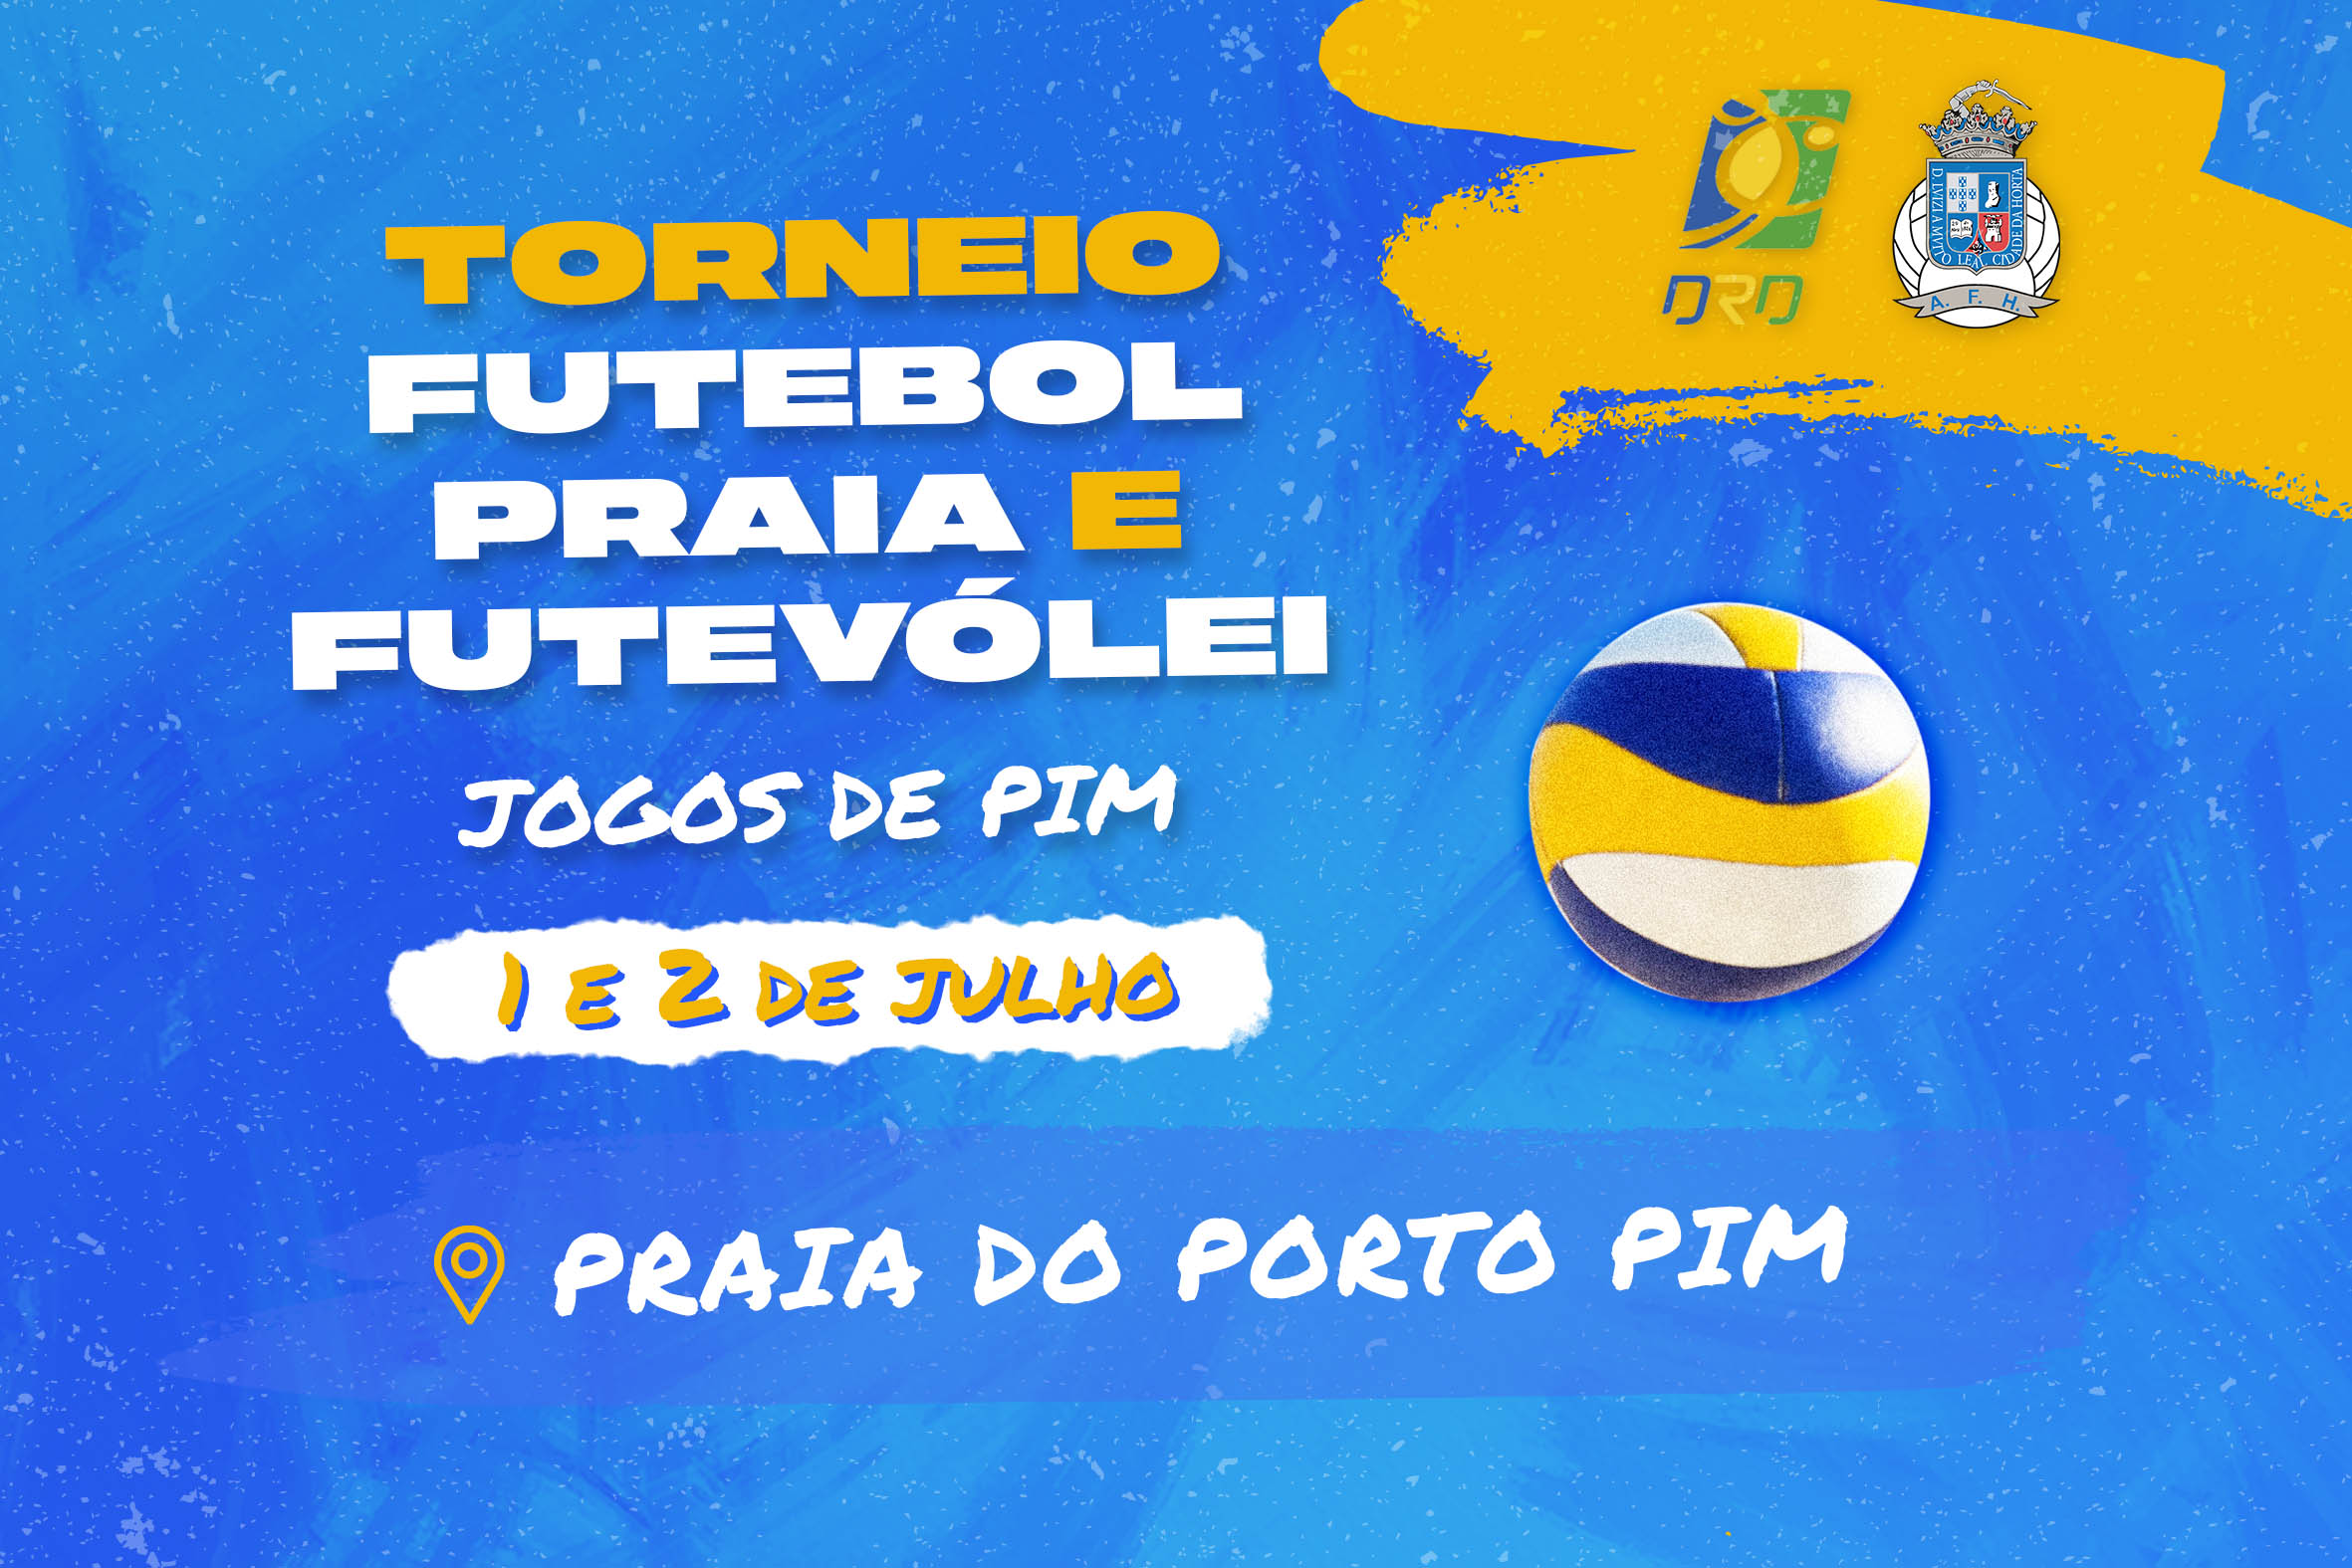 Inscrições abertas para Torneios de Futebol e Futevólei na Praia do Porto Pim